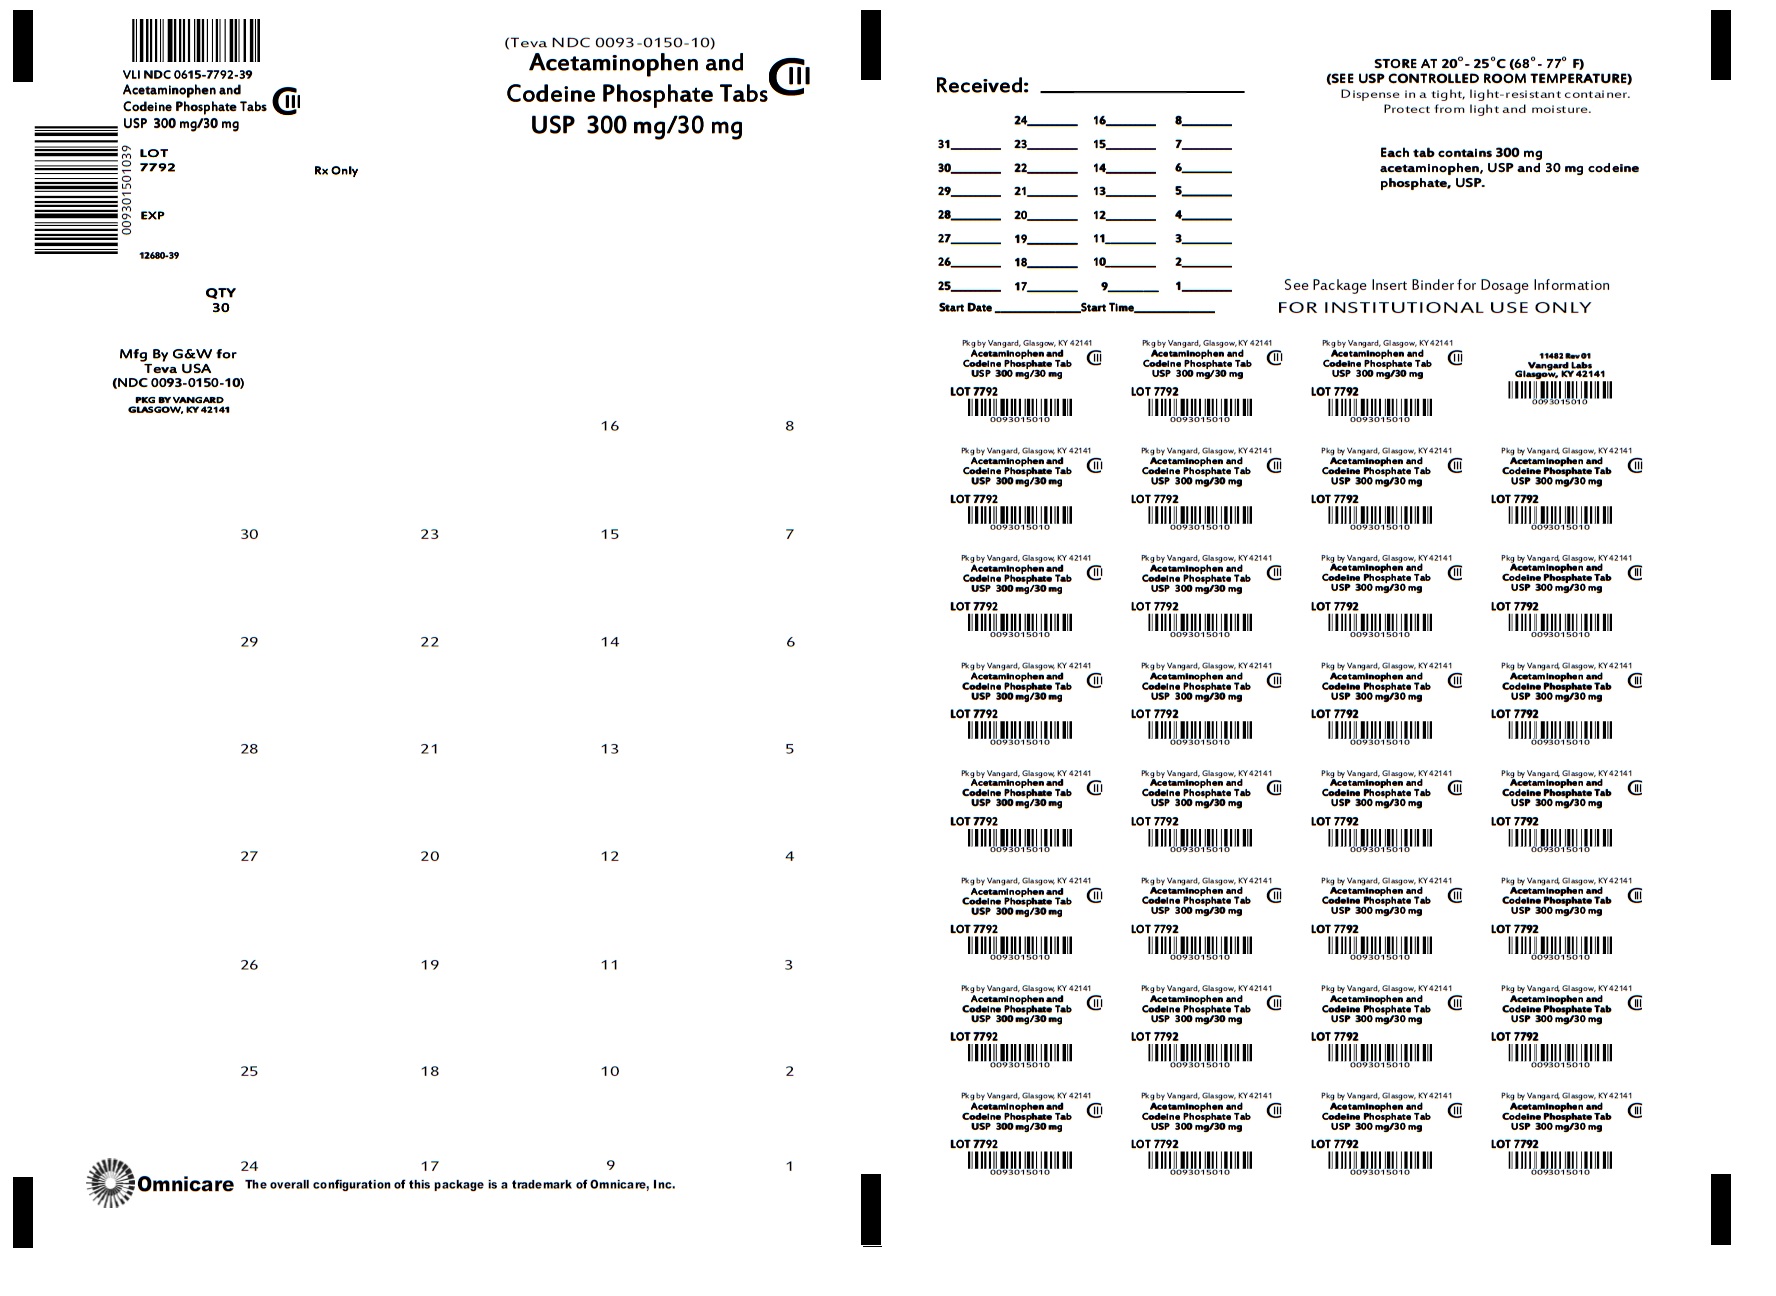 Acetaminophen and Codeine Phosphate Tabs 300mg/30mg bingo card label